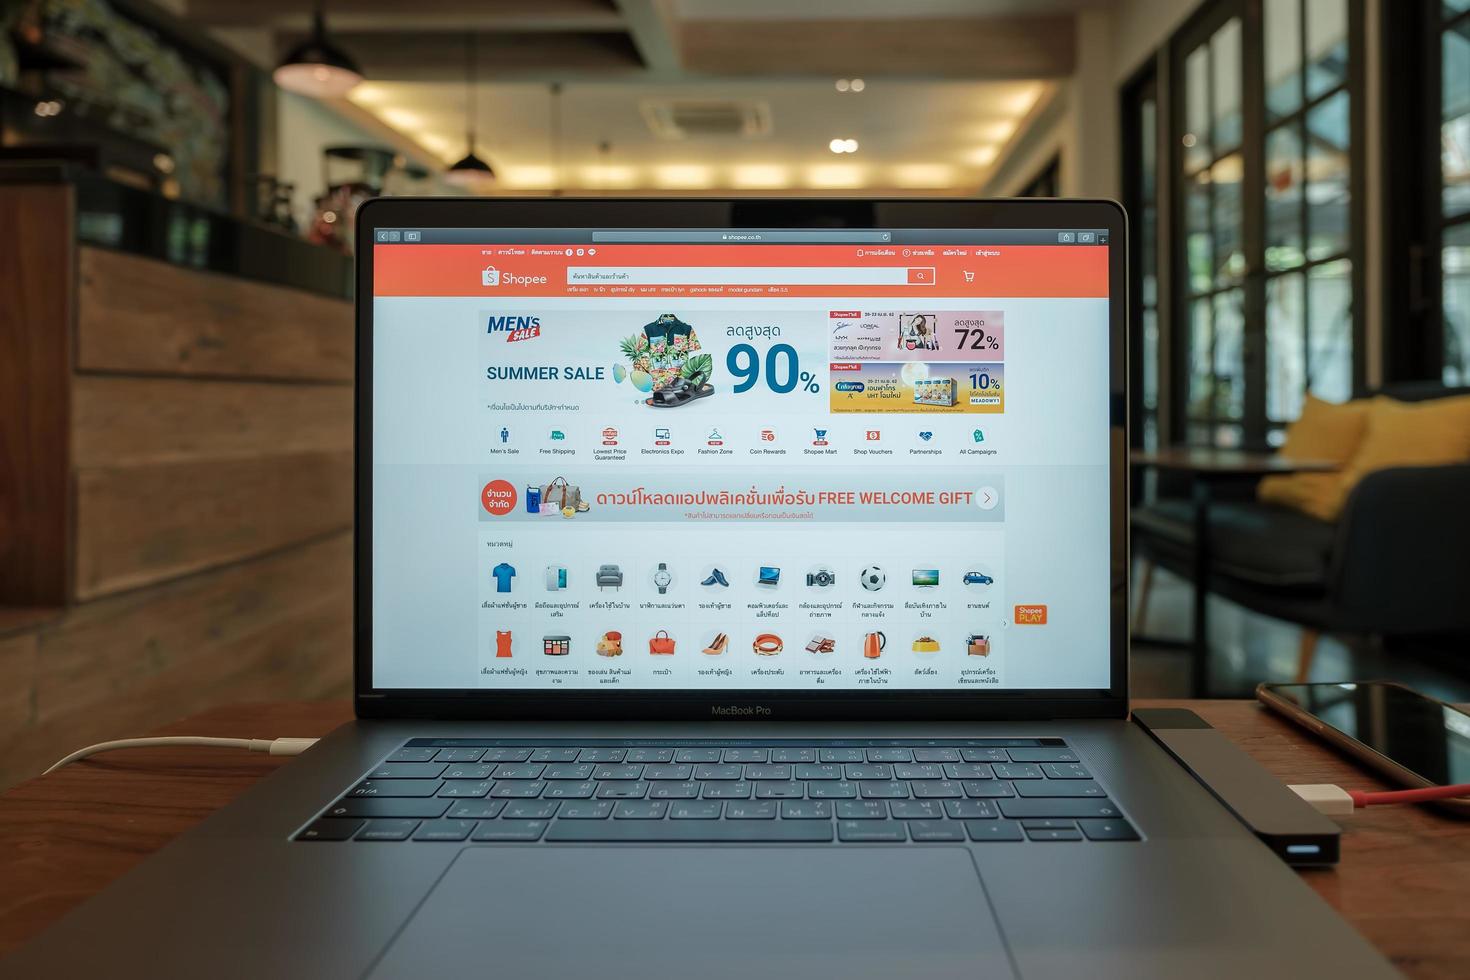 chiang mai, thaïlande 2019- macbook pro avec site web shopee à l'écran photo